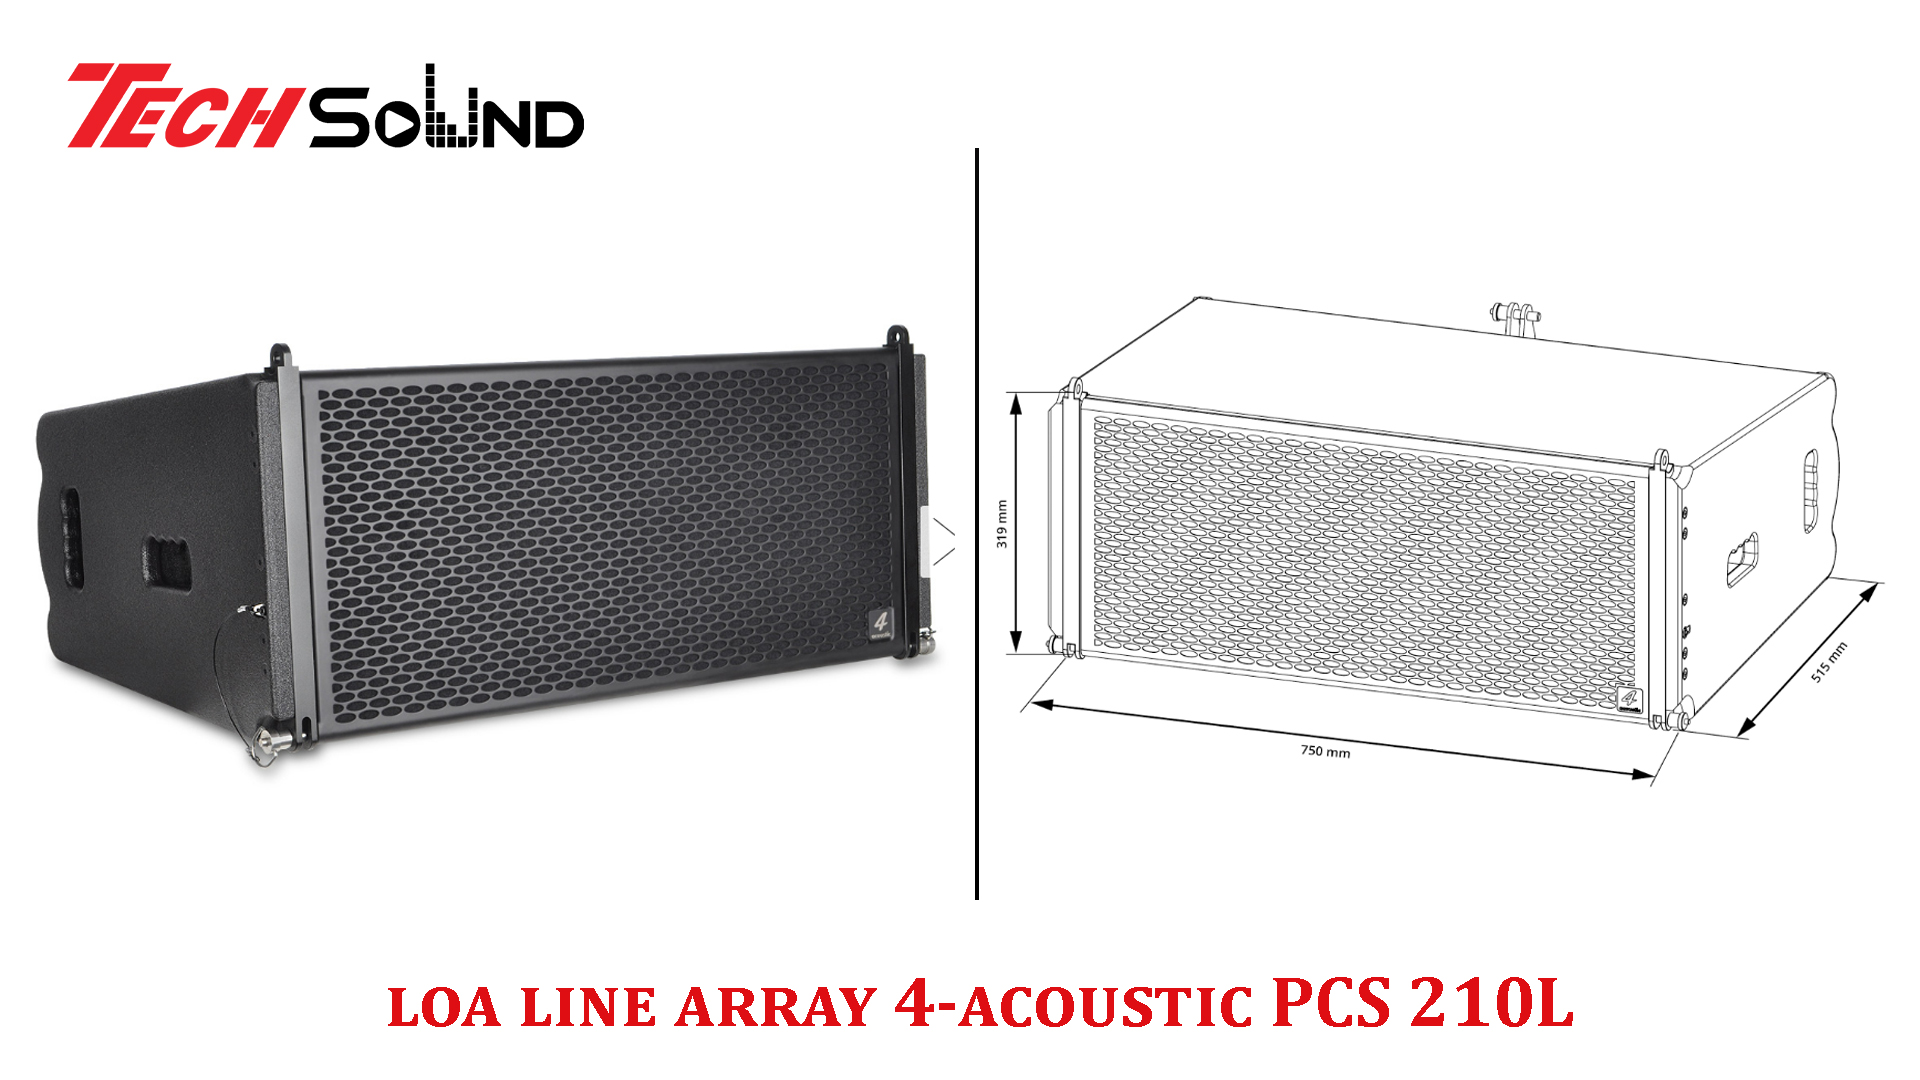 Loa line array 4-acoustic PCS 210L